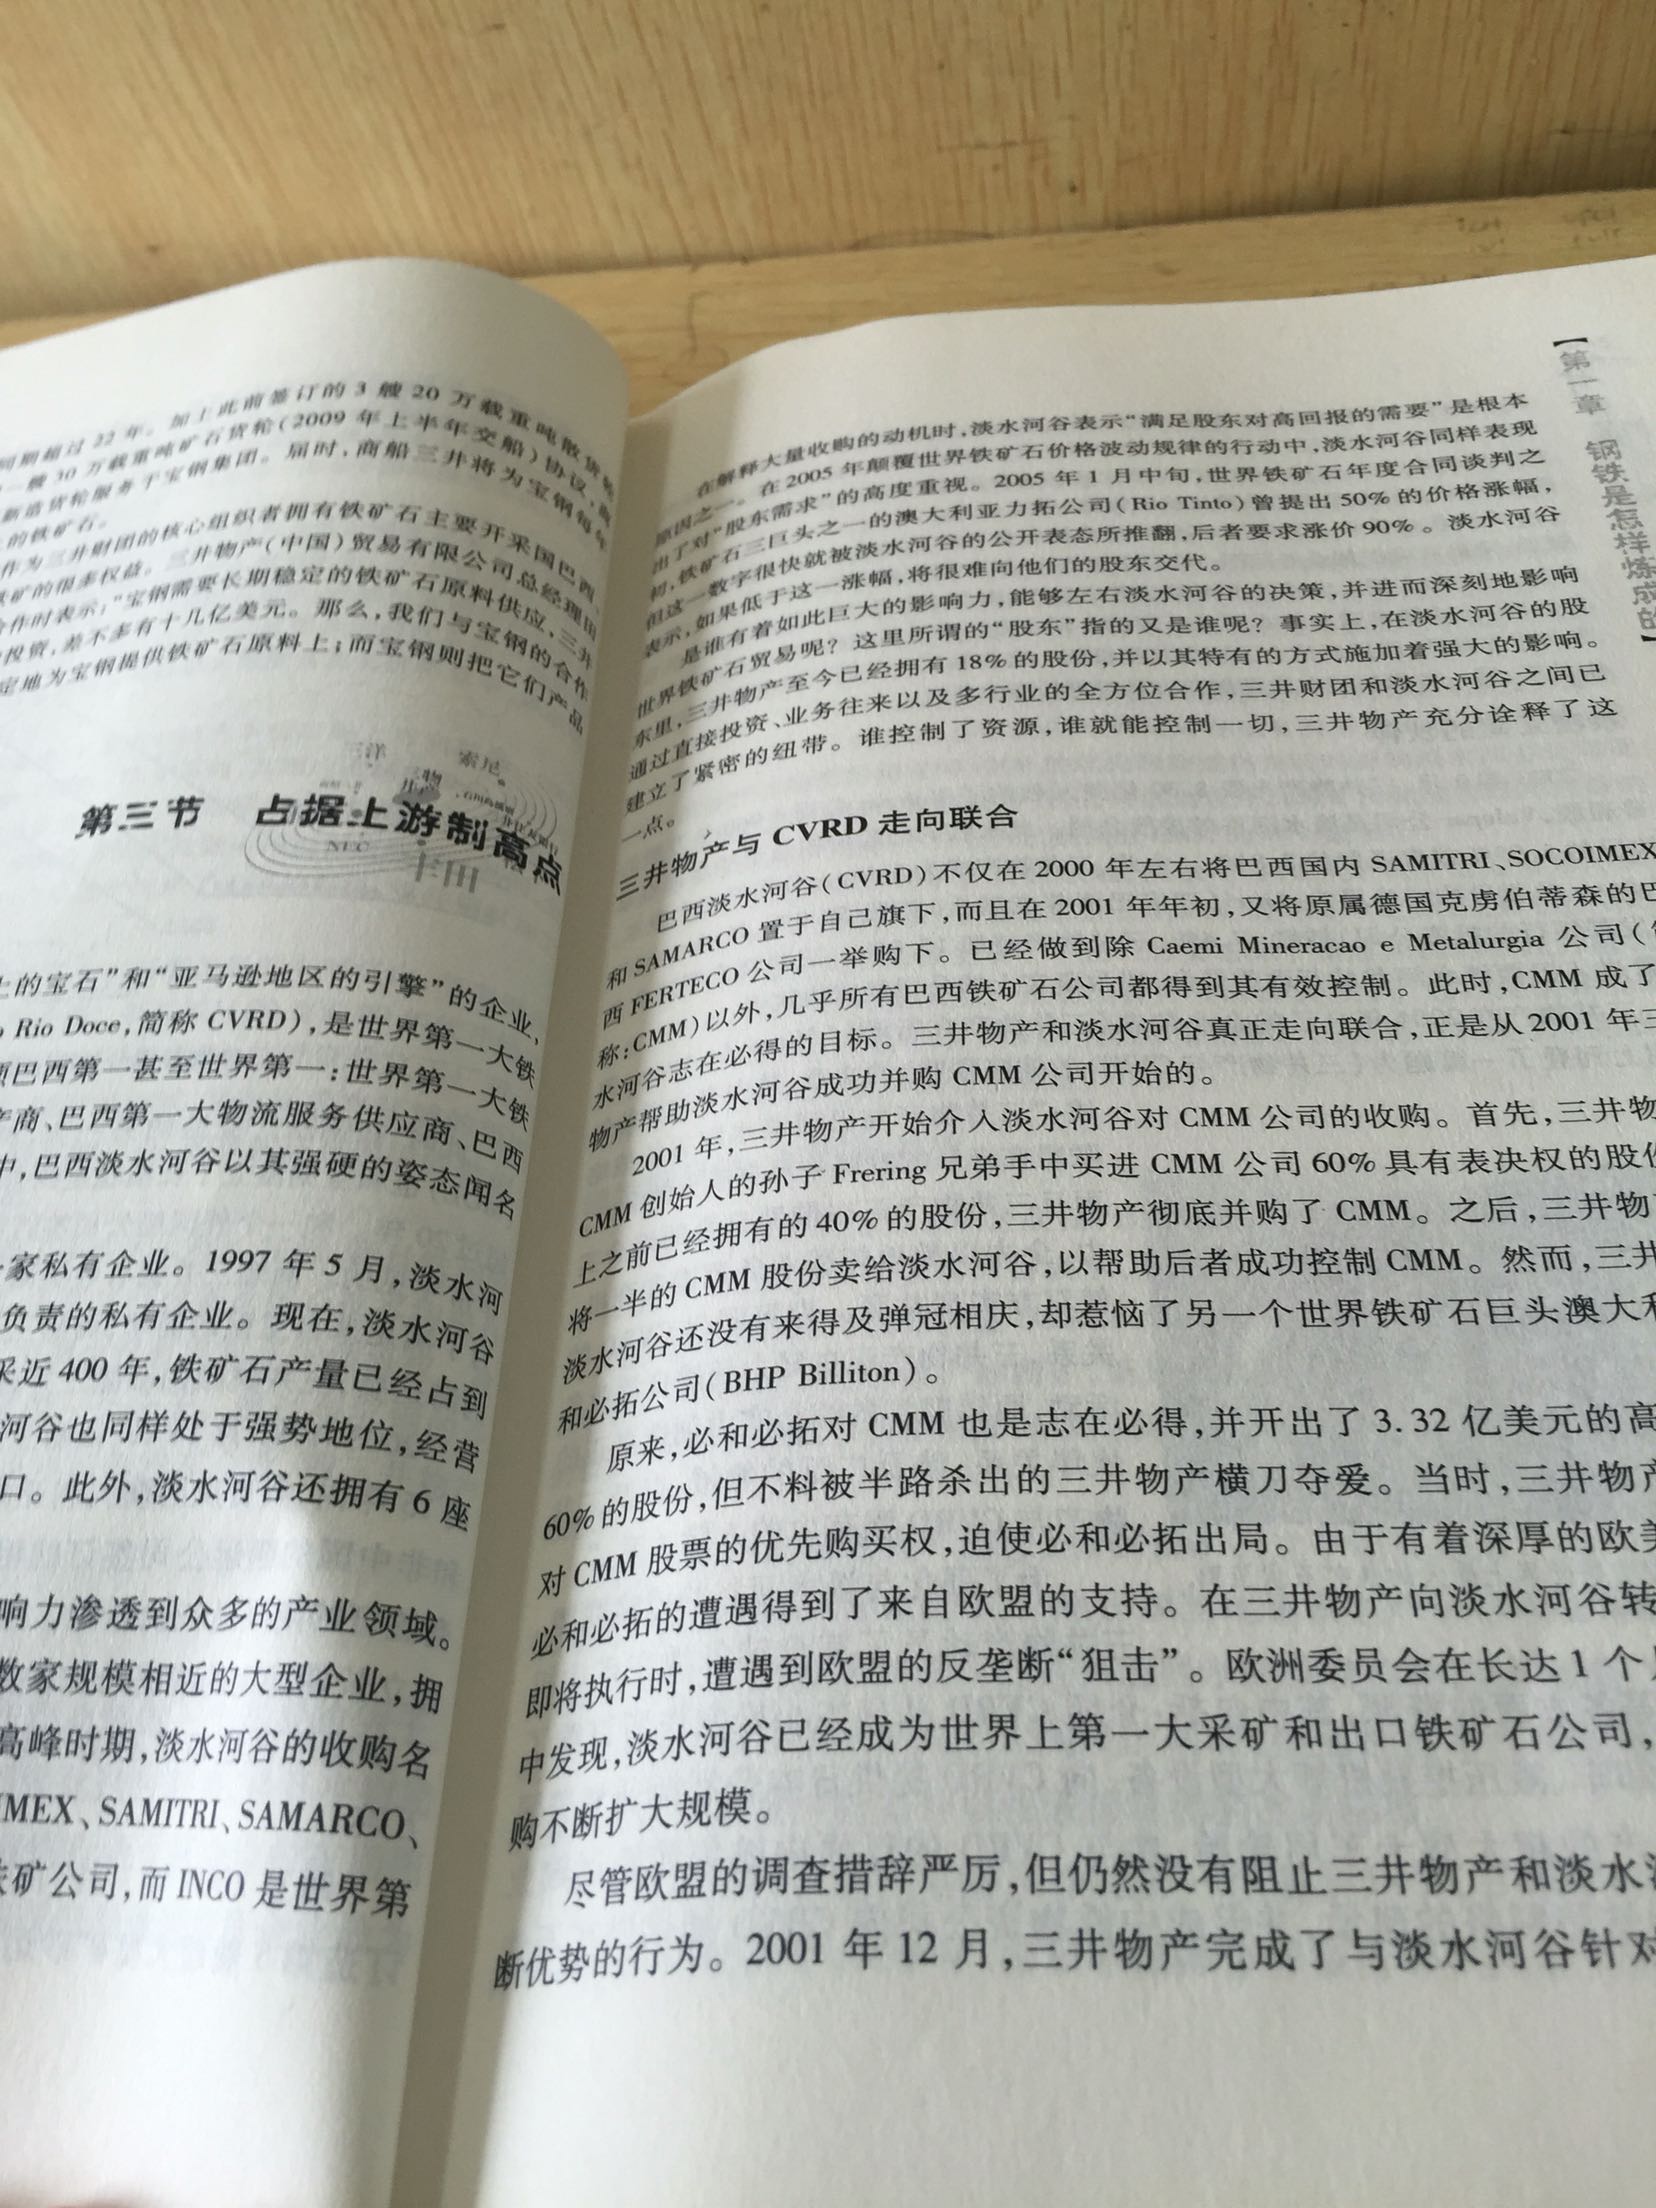 翻开这本书充分了解三井在中国乃至世界的布局，从而操控中国经济